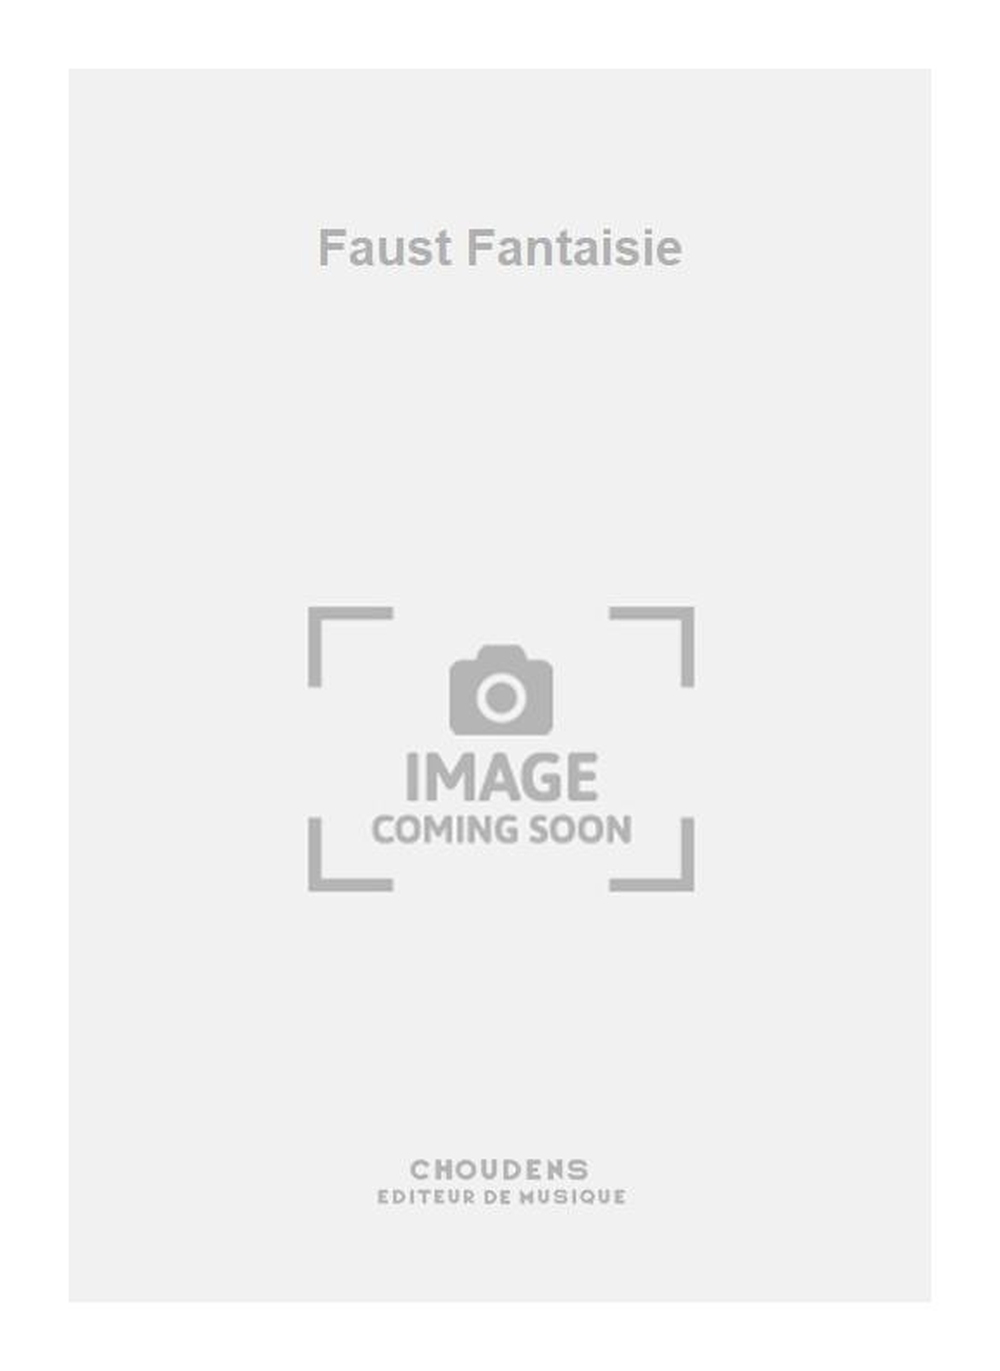 Charles Gounod: Faust Fantaisie